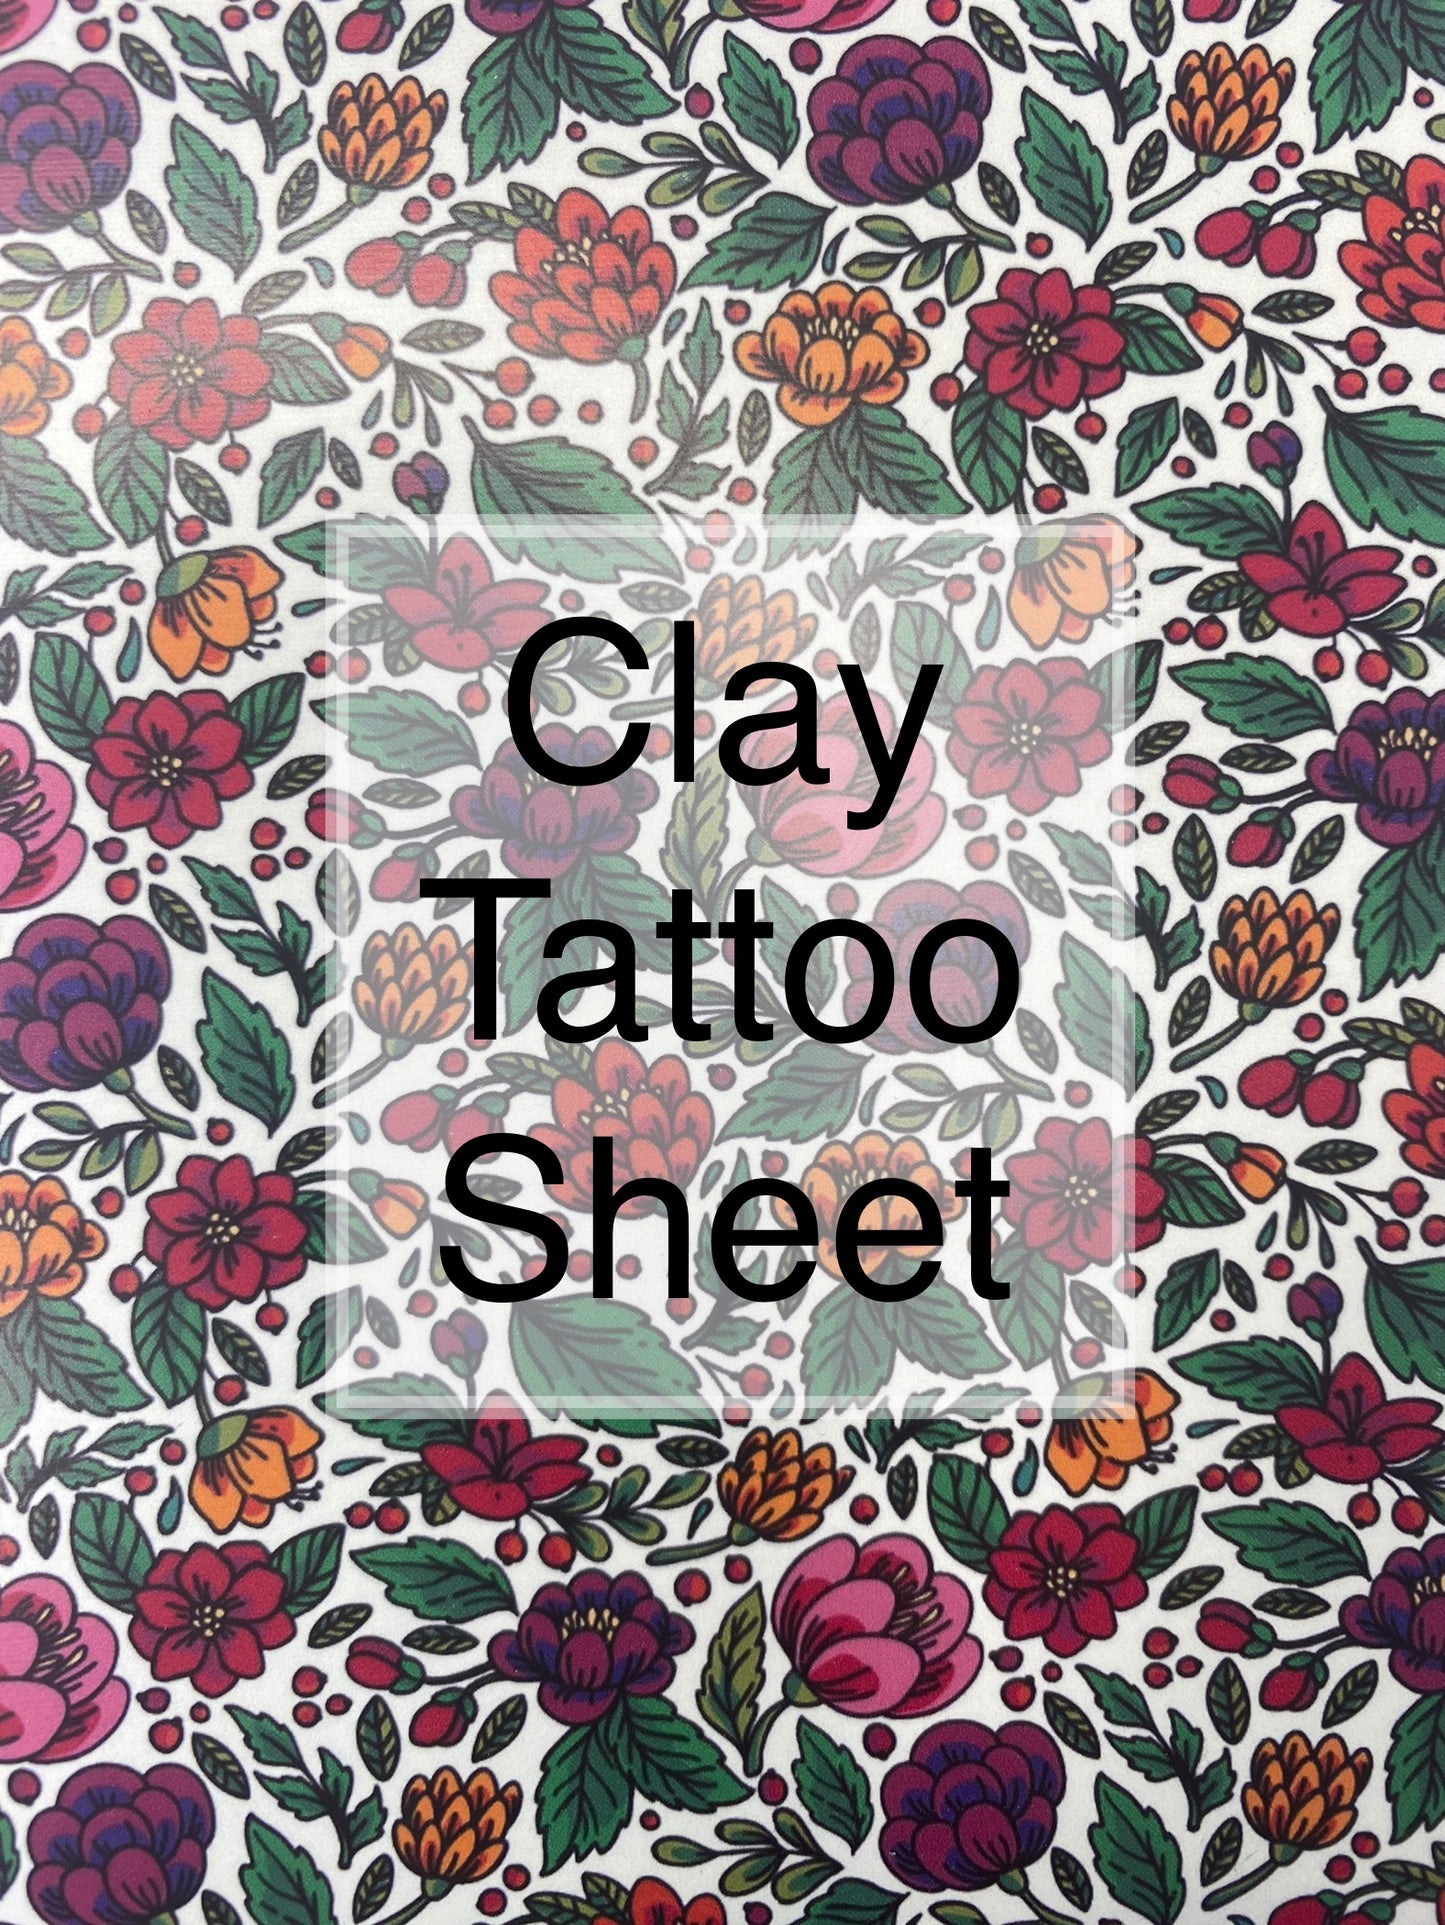 Vintage Garden - Clay Tattoo Sheet